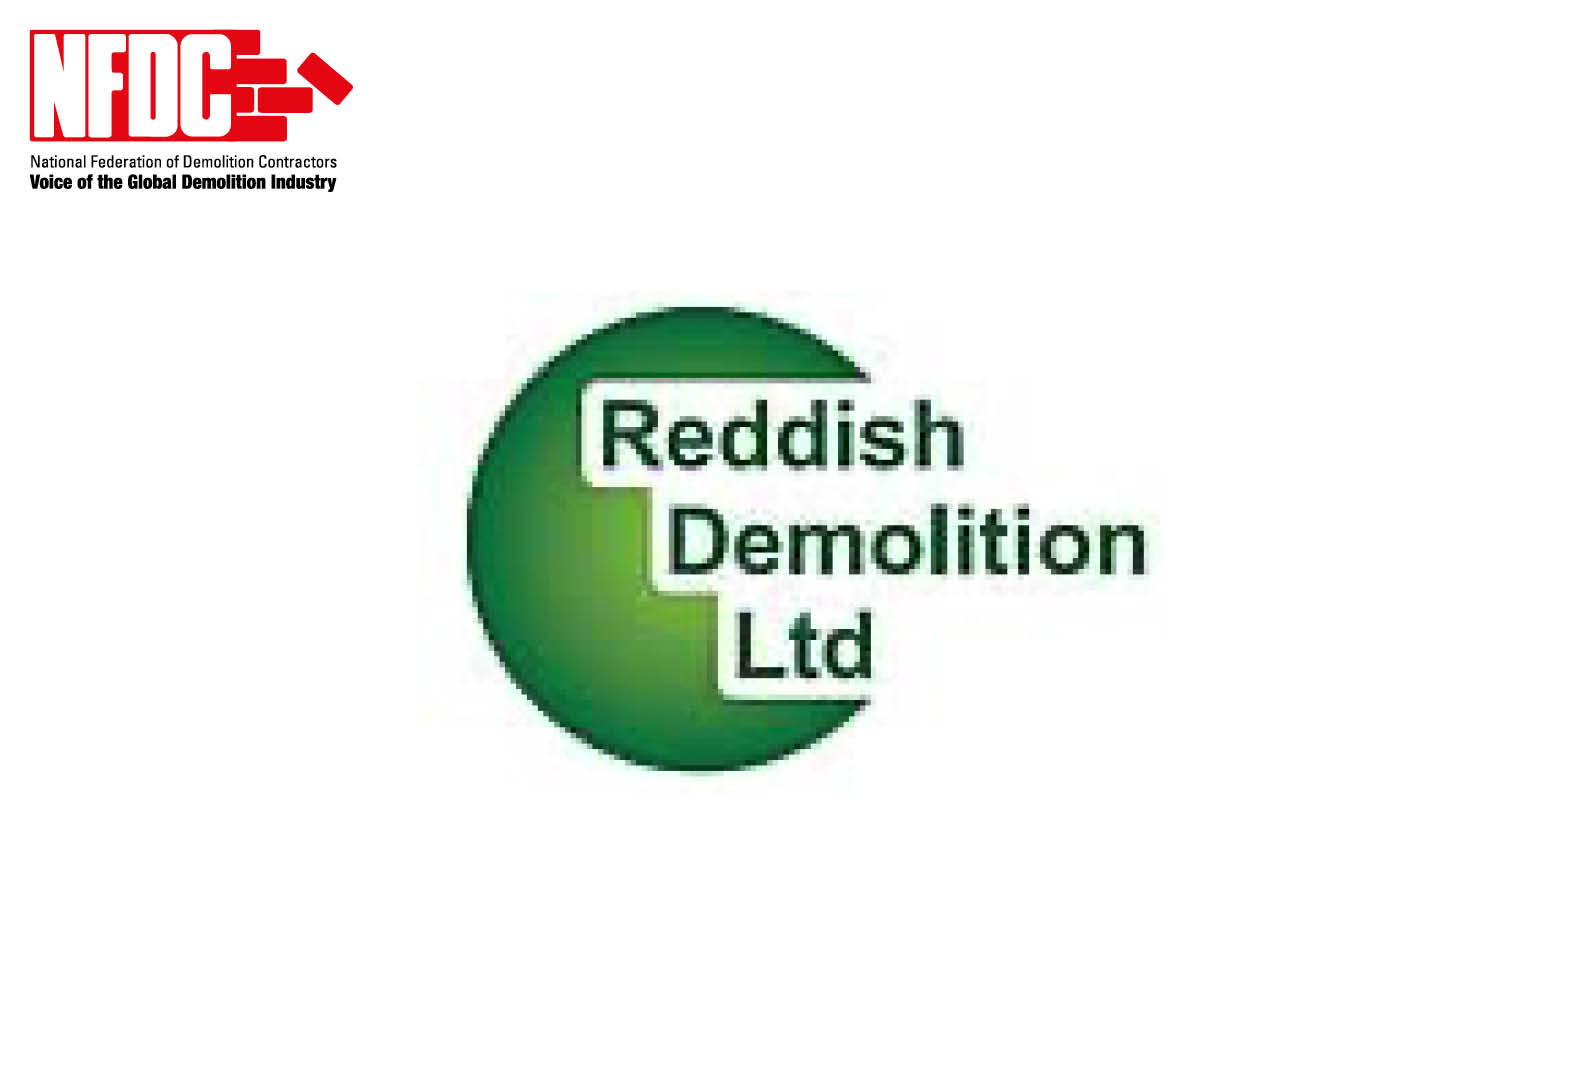 Reddish Demolition Ltd